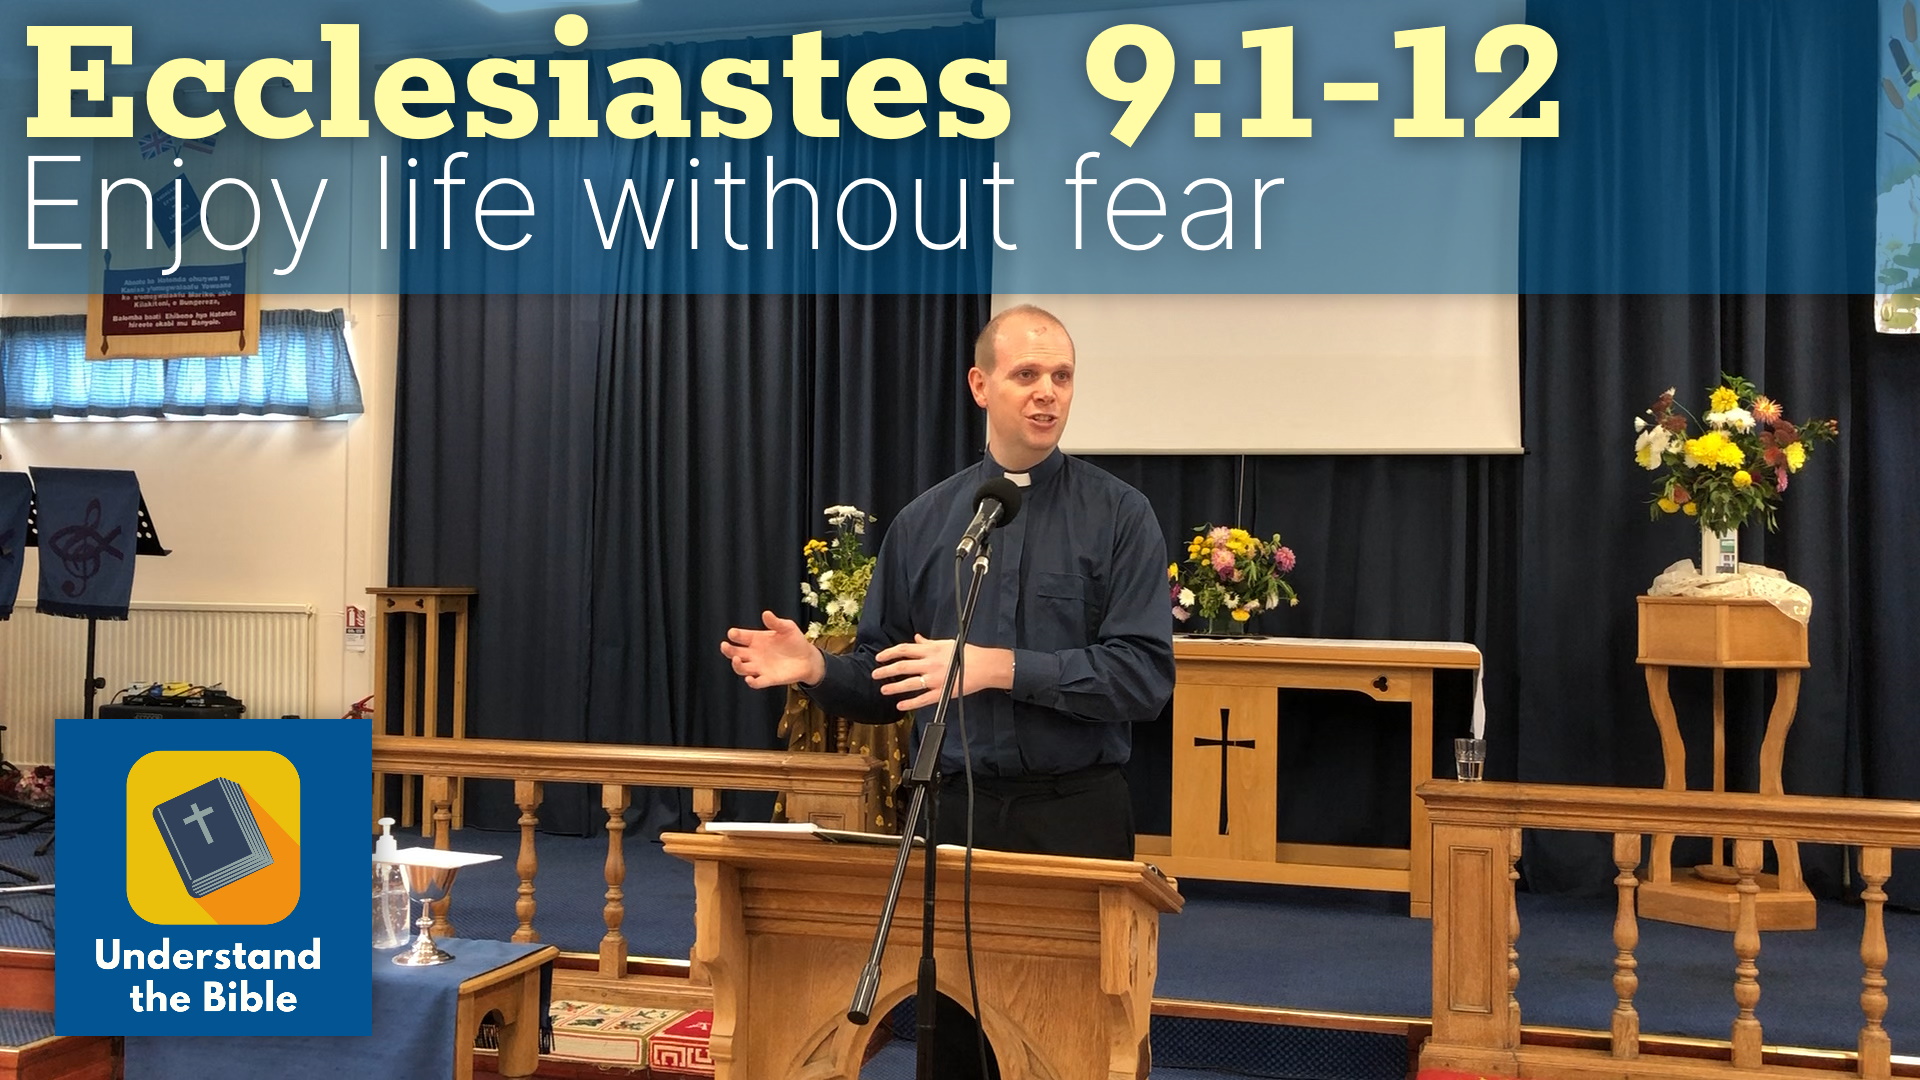 Enjoy life without fear | Ecclesiastes 9:1-12 Sermon